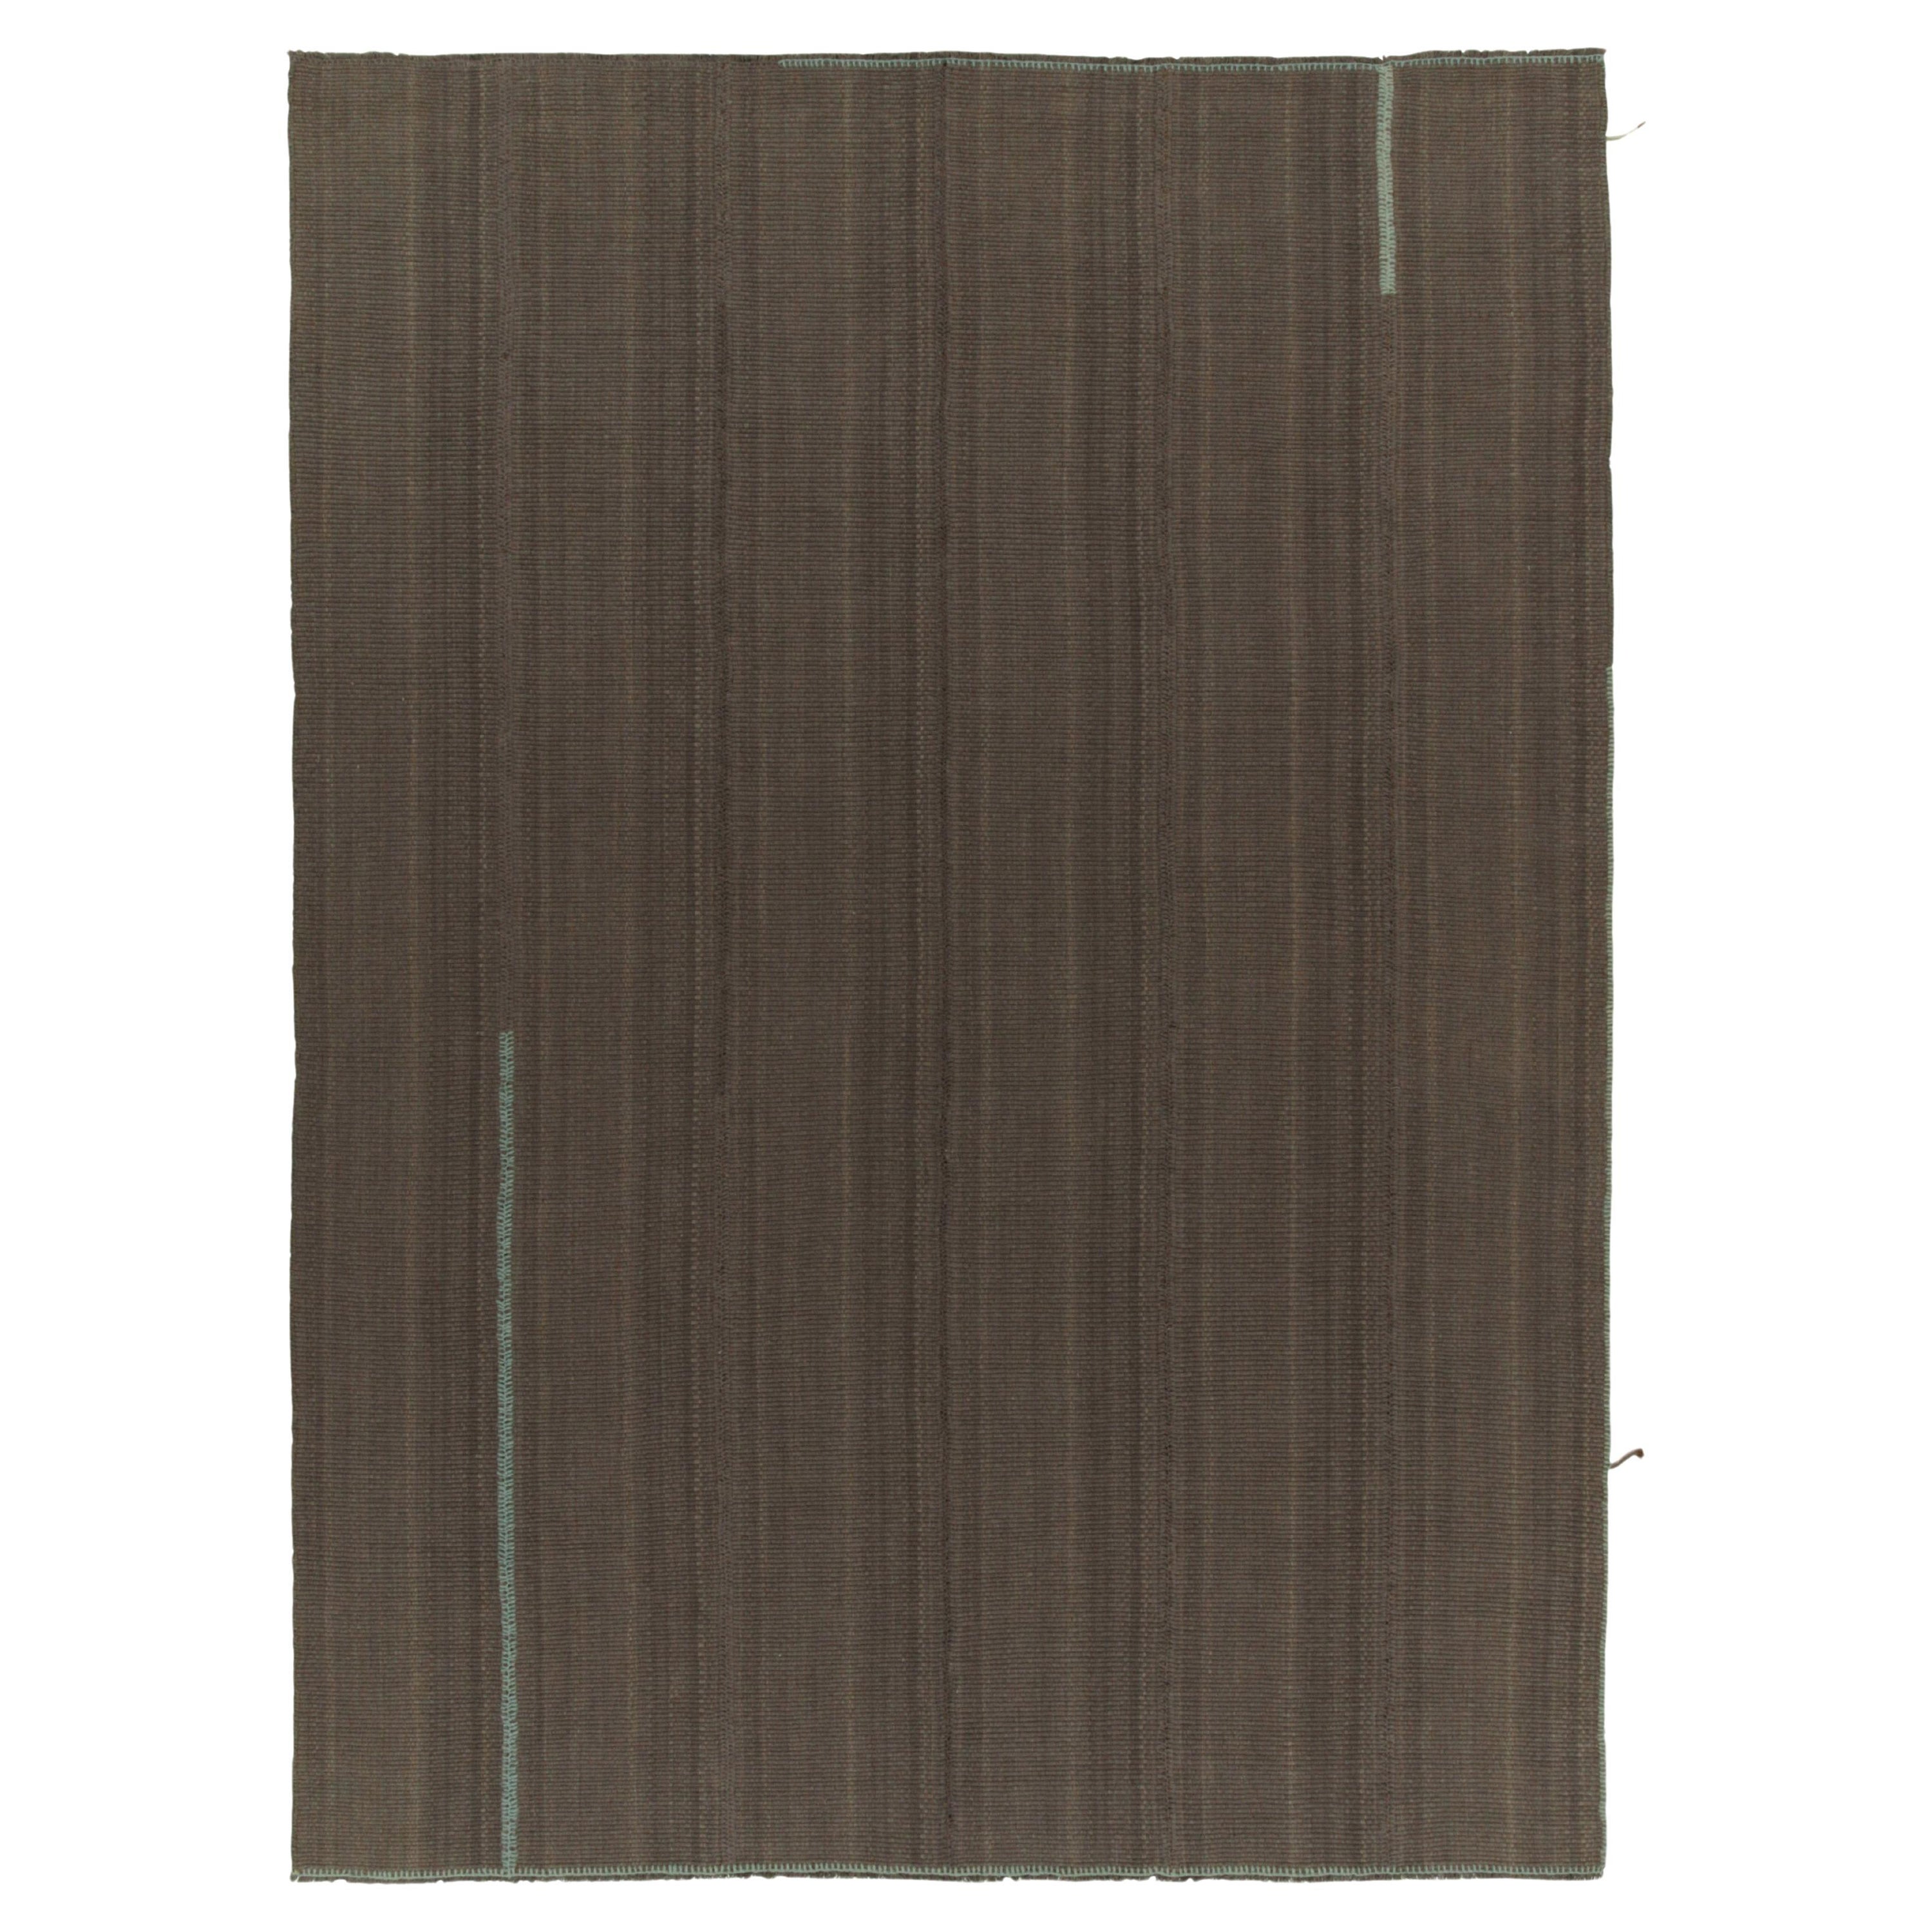 Rug & Kilim's Contemporary Kilim in Brown mit gedämpften Streifen